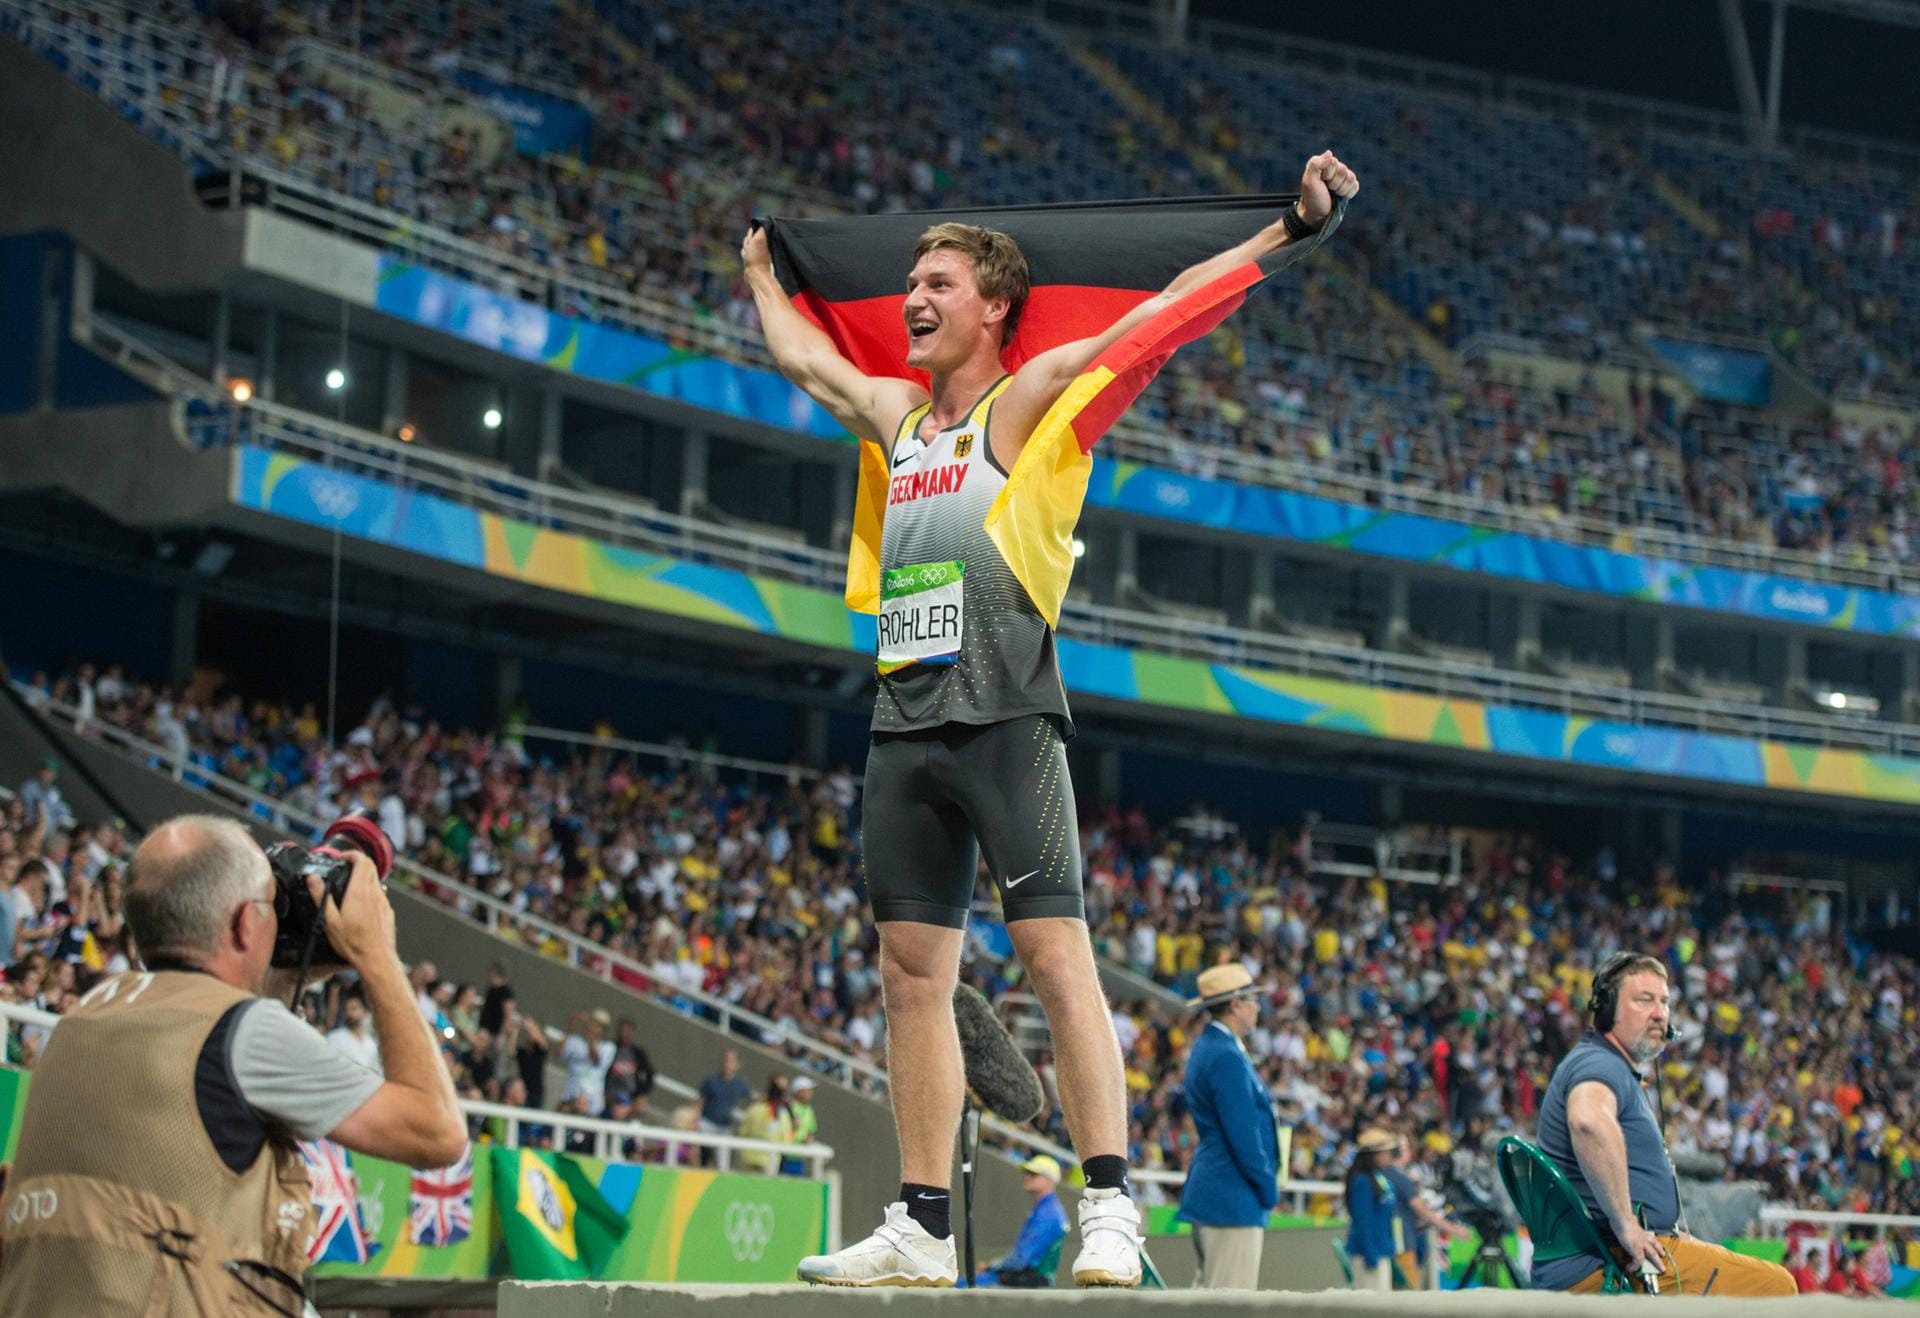 Thomas Röhler sicherte sich bei den Olympischen Spielen in Rio de Janeiro 2016 die Goldmedaille im Speerwerfen. Auch 2021 wird er in Tokio wieder an den Start gehen und versuchen, seine Medaille zu verteidigen.